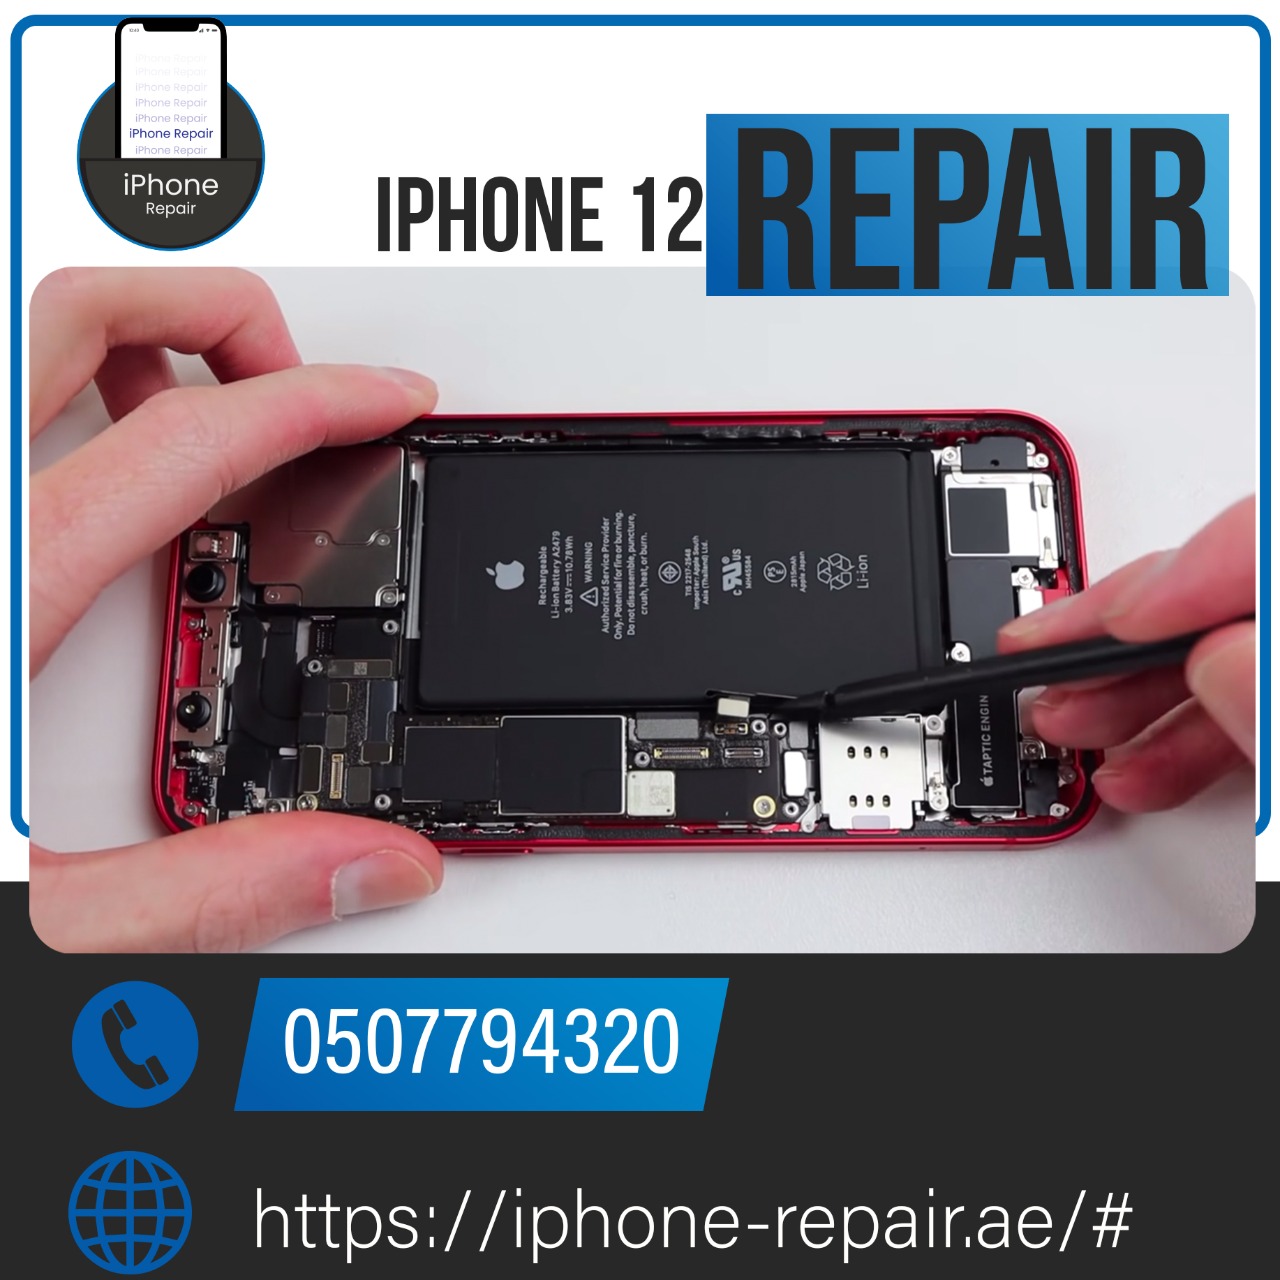 Iphone 12 repair